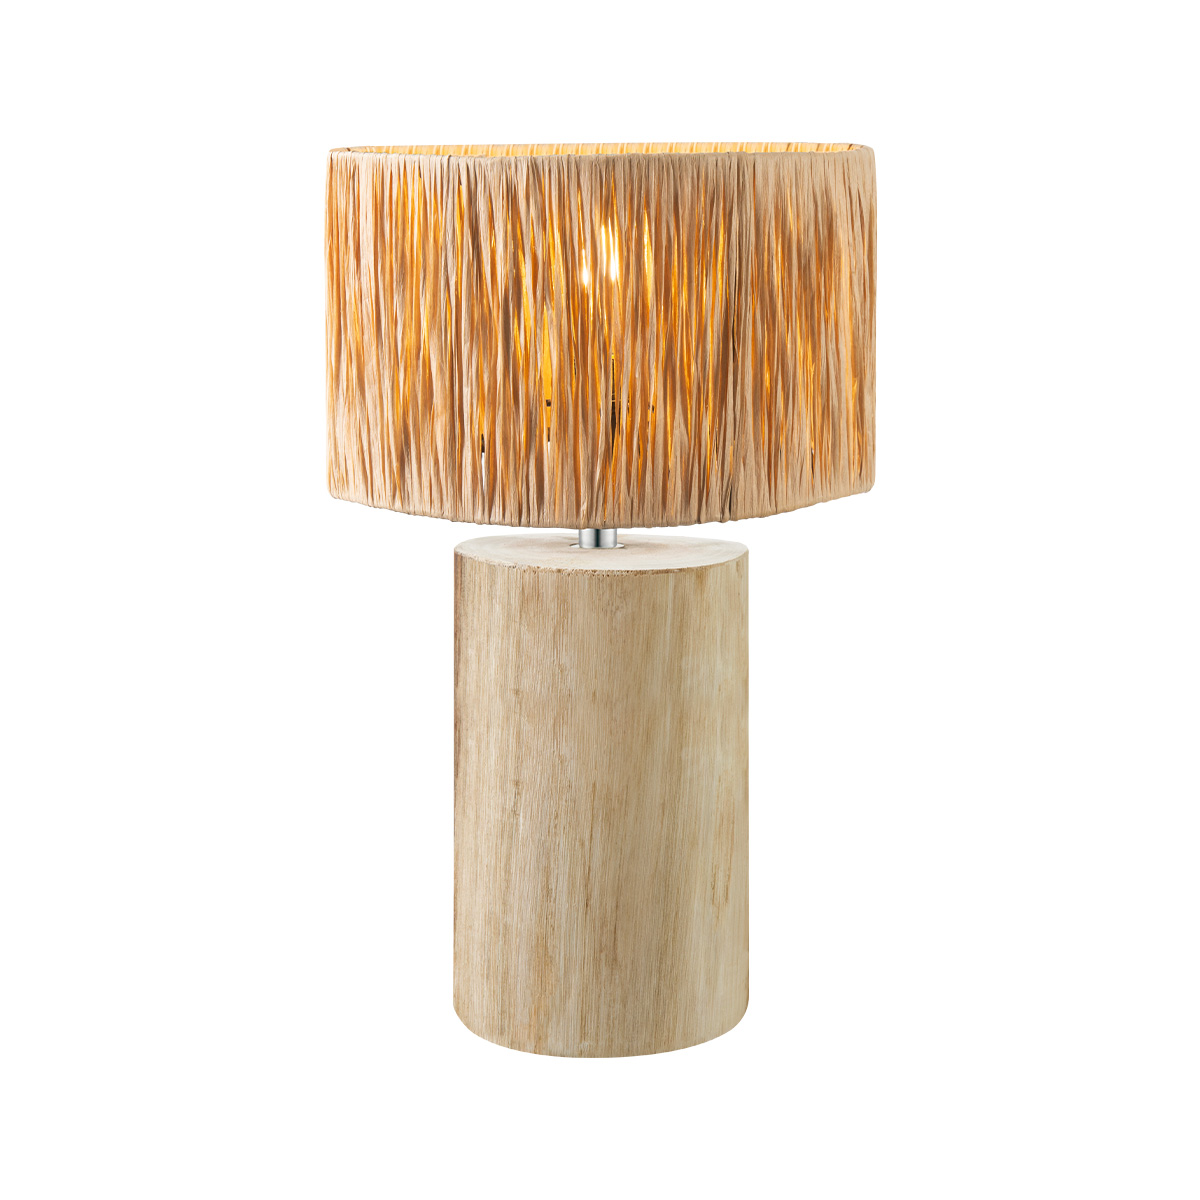 Tangla lighting - TLT7440-01NT - Table lamp 1 Light - FSC wood + sea grass - natural - large - E27